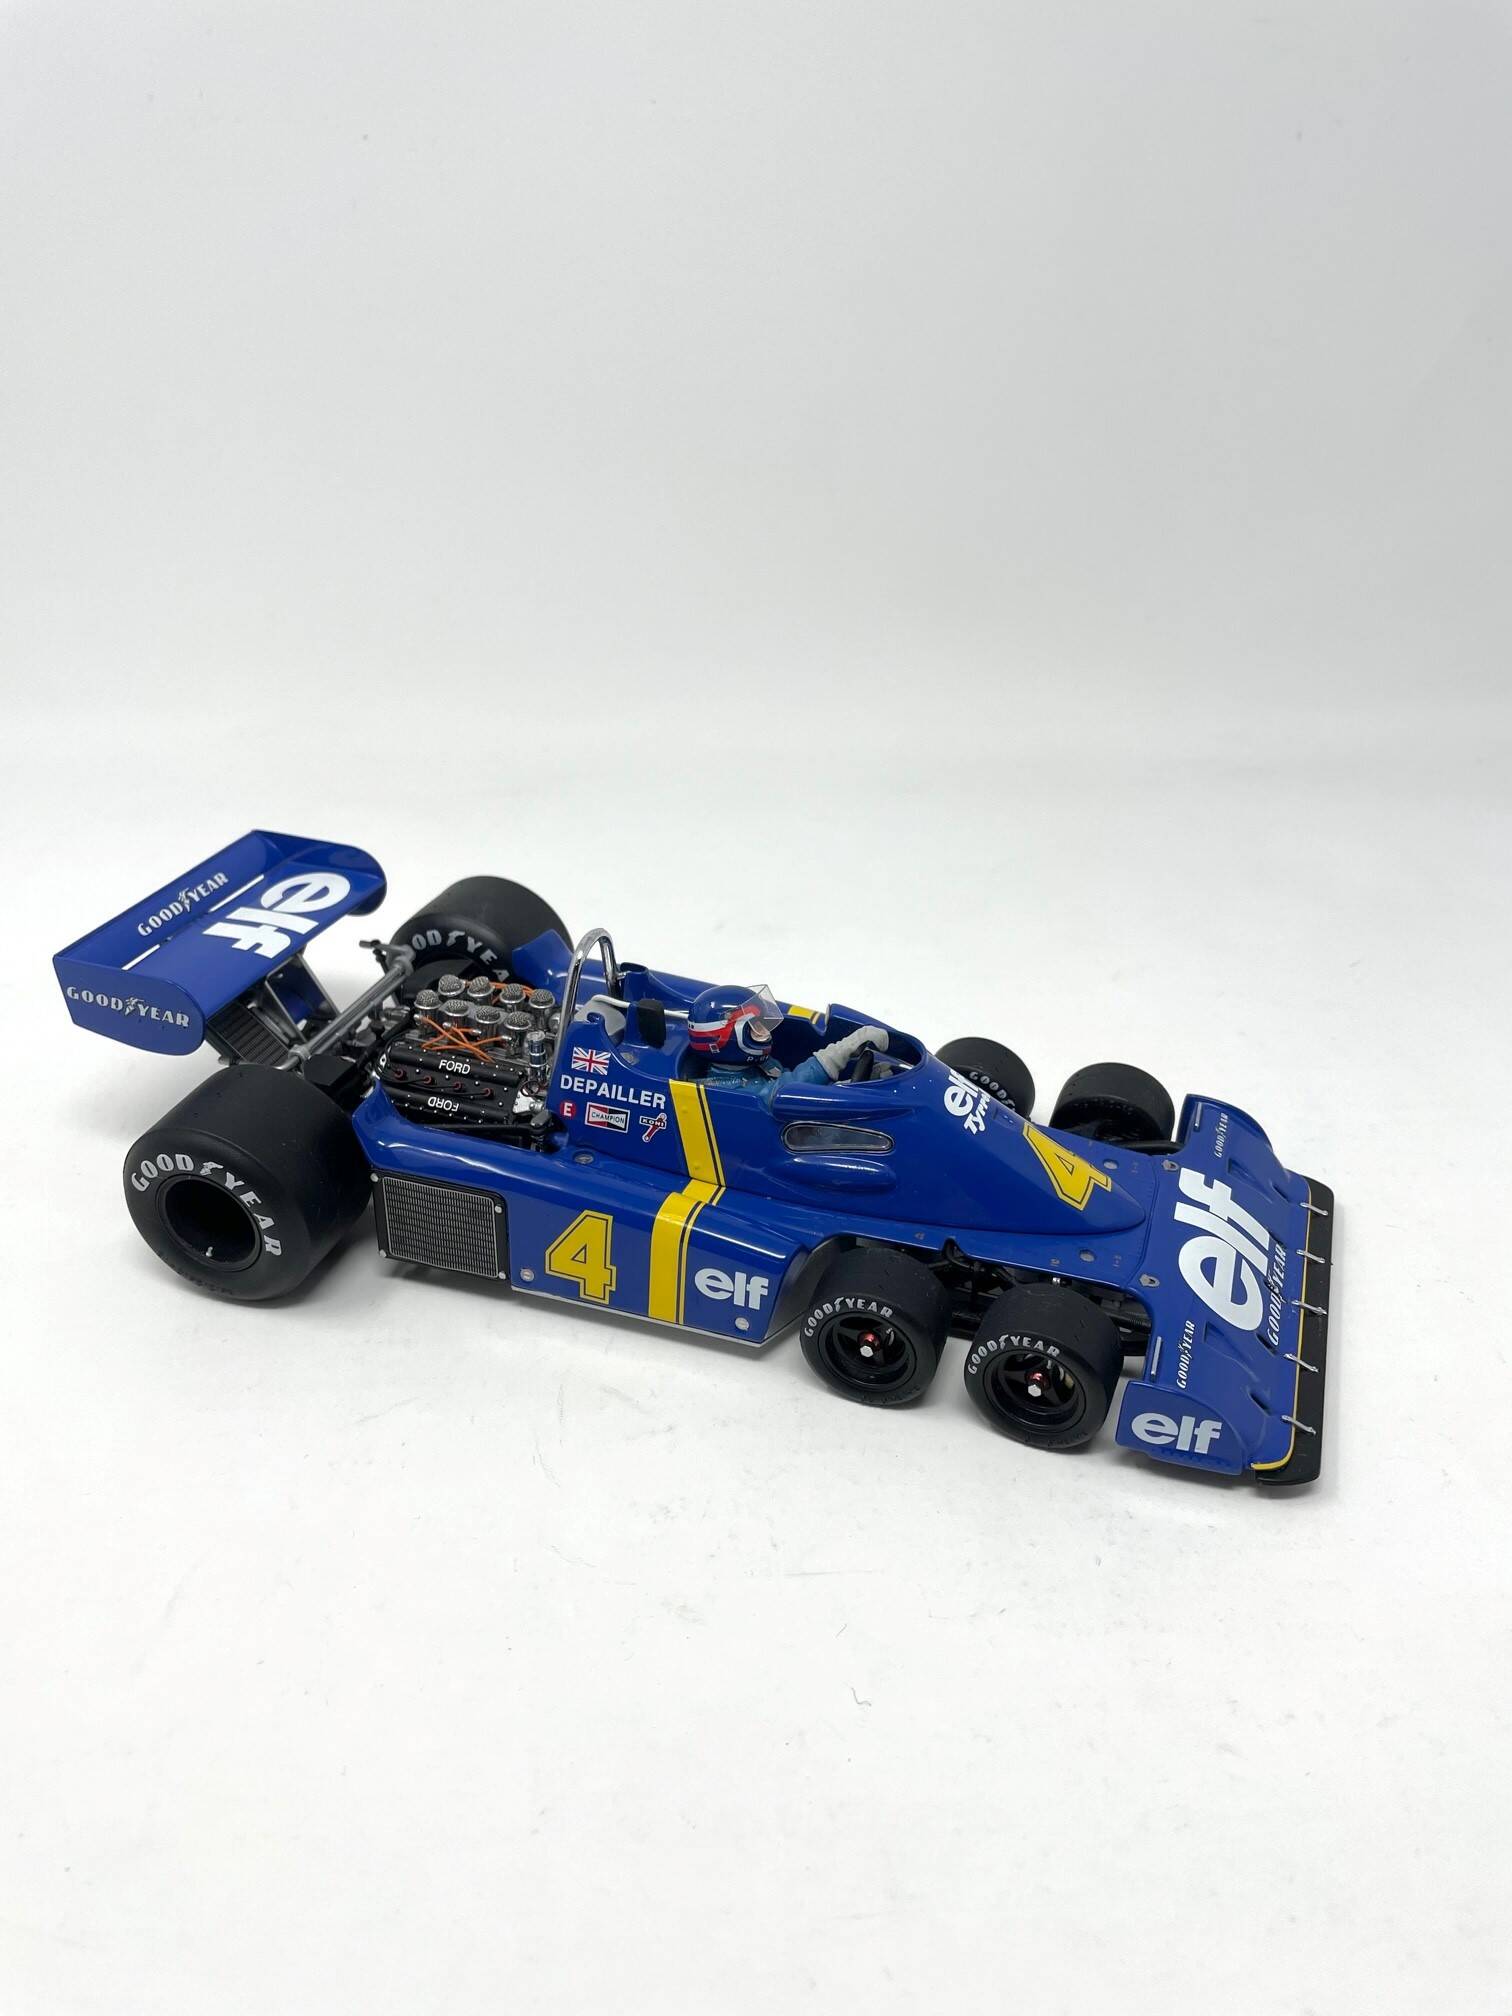 ティレル エグゾトF1 Exoto Tyrrell P34/2 - ミニカー